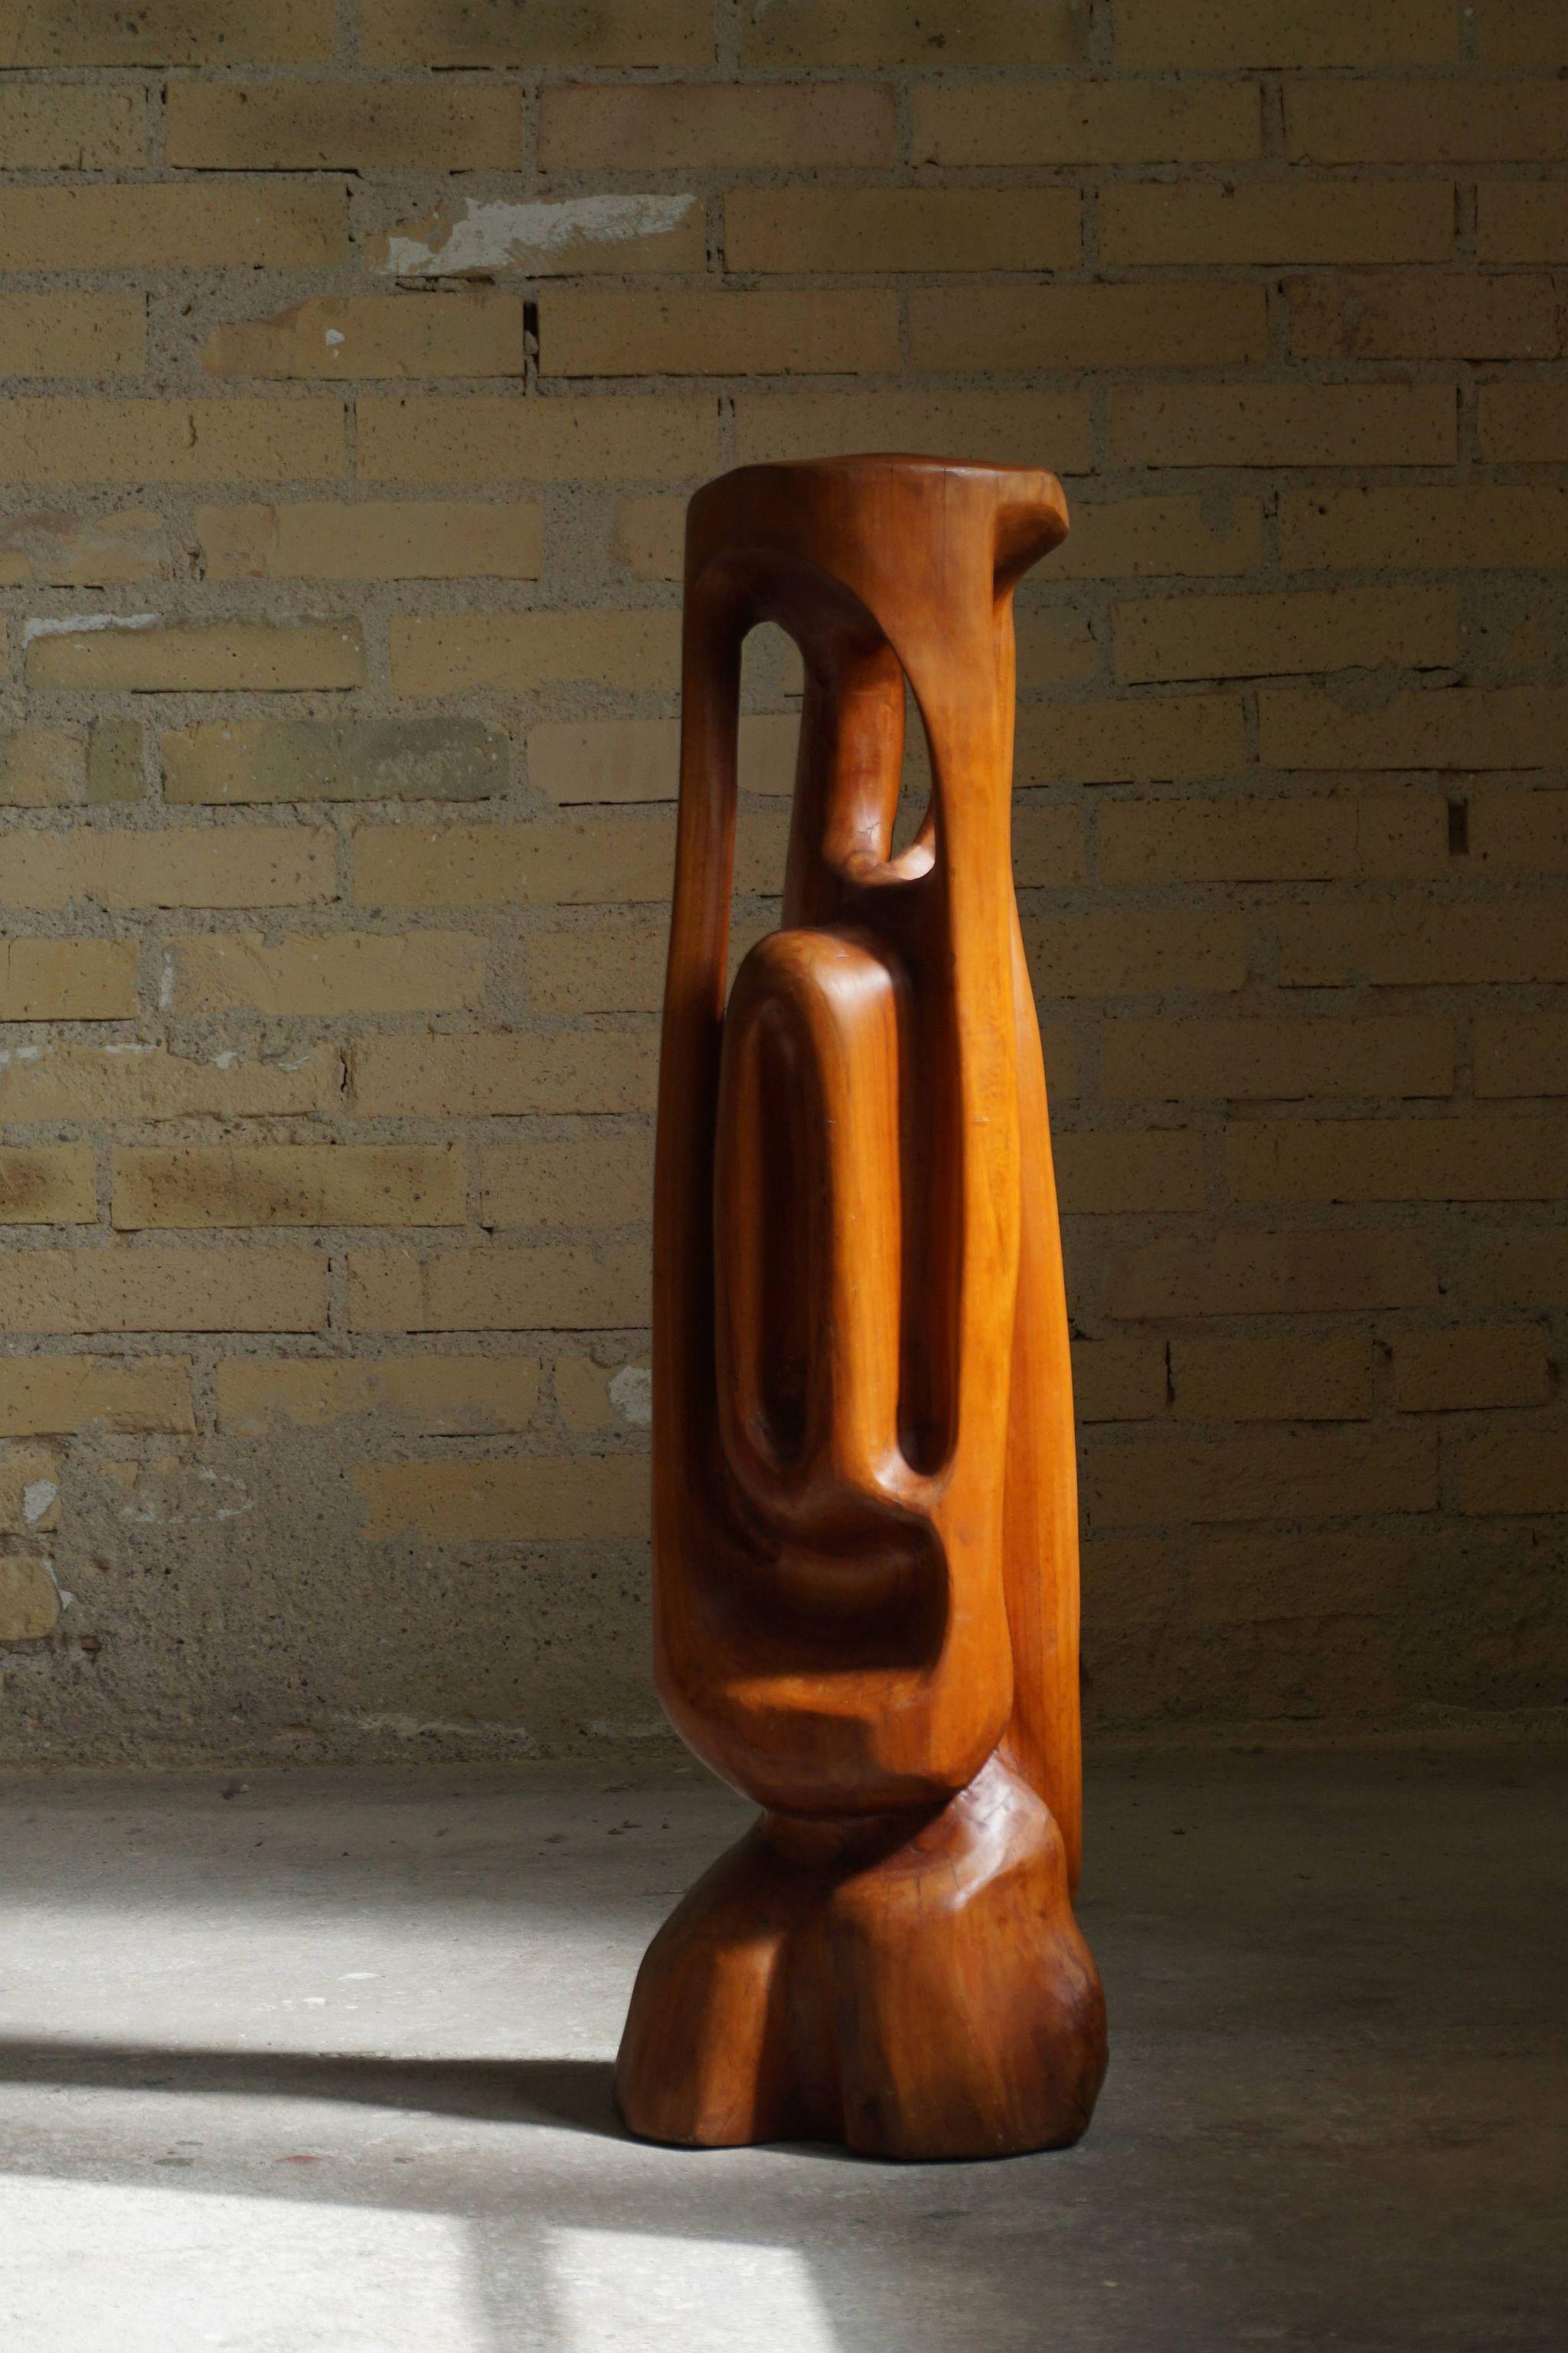 Große Holzskulptur des dänischen Künstlers Ole Wettergren aus dem Jahr 1965. Dies ist seine erste Holzskulptur.
Ole ist berühmt für seine Holzskulpturen und wurde in internationalen Zeitschriften wie dem ARK Journal vorgestellt.